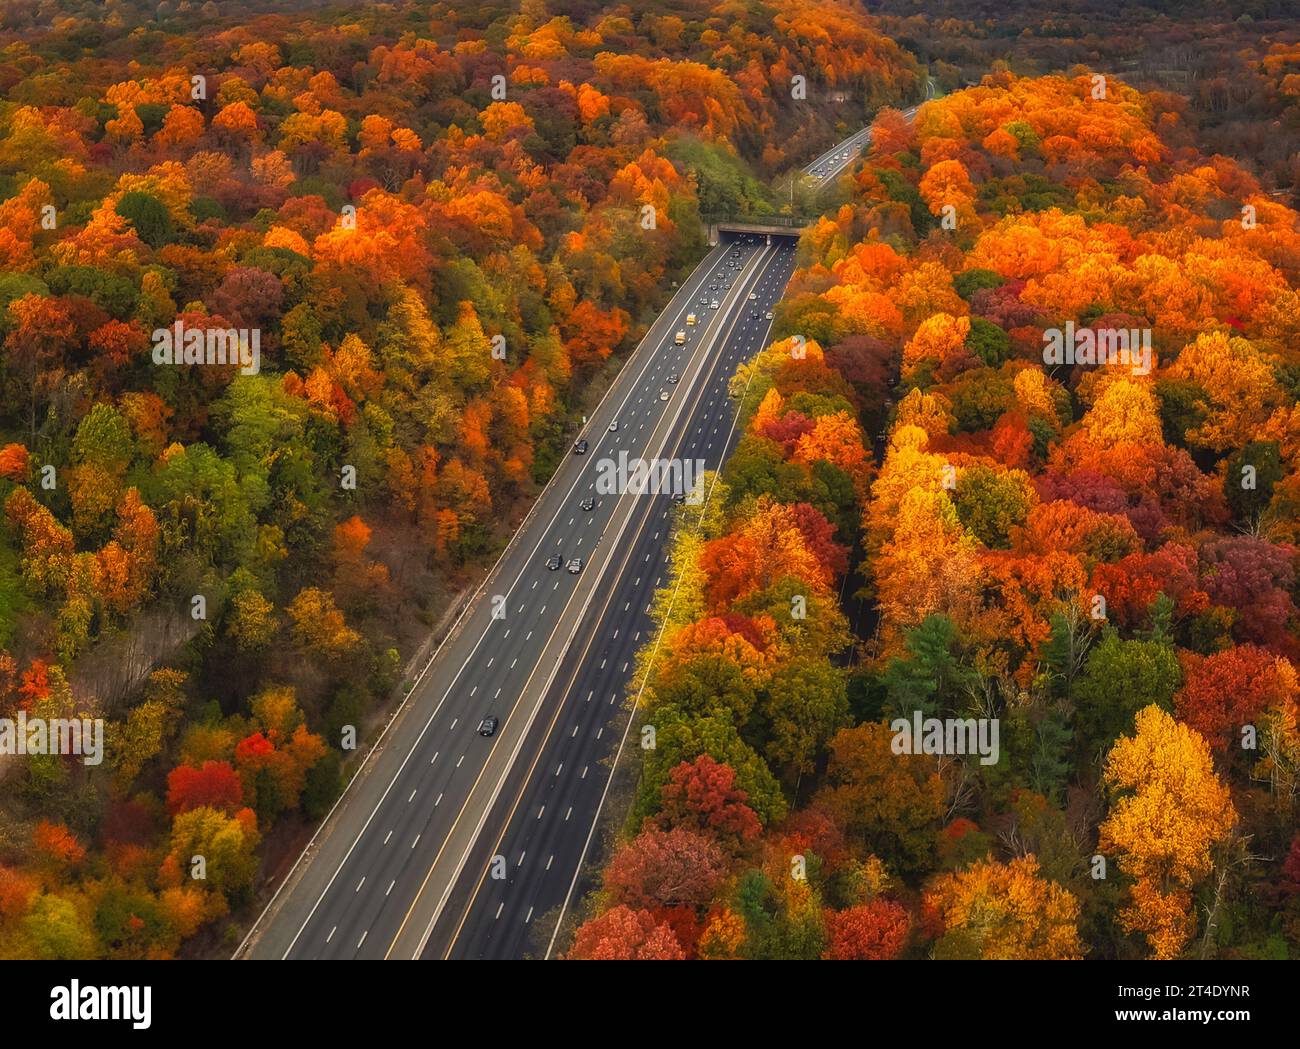 NJ Fall Peak – aus der Vogelperspektive des Peak Herbstlaub in New Jersey. Stockfoto